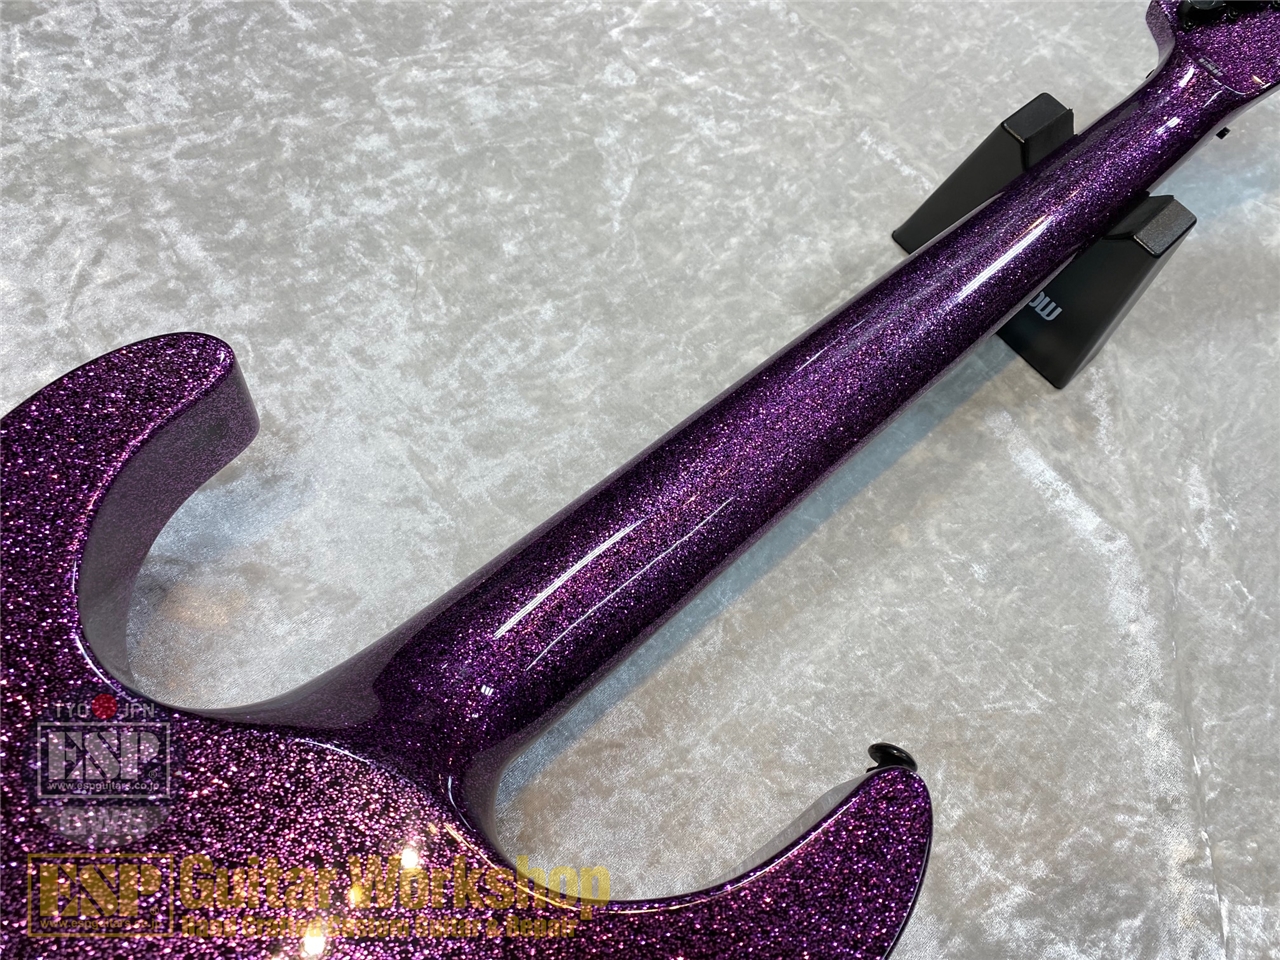 【即納可能】LTD KH-602 Purple Sparkle Kirk Hammett Signature Model (カーク・ハメット シグネイチャーモデル) GWS